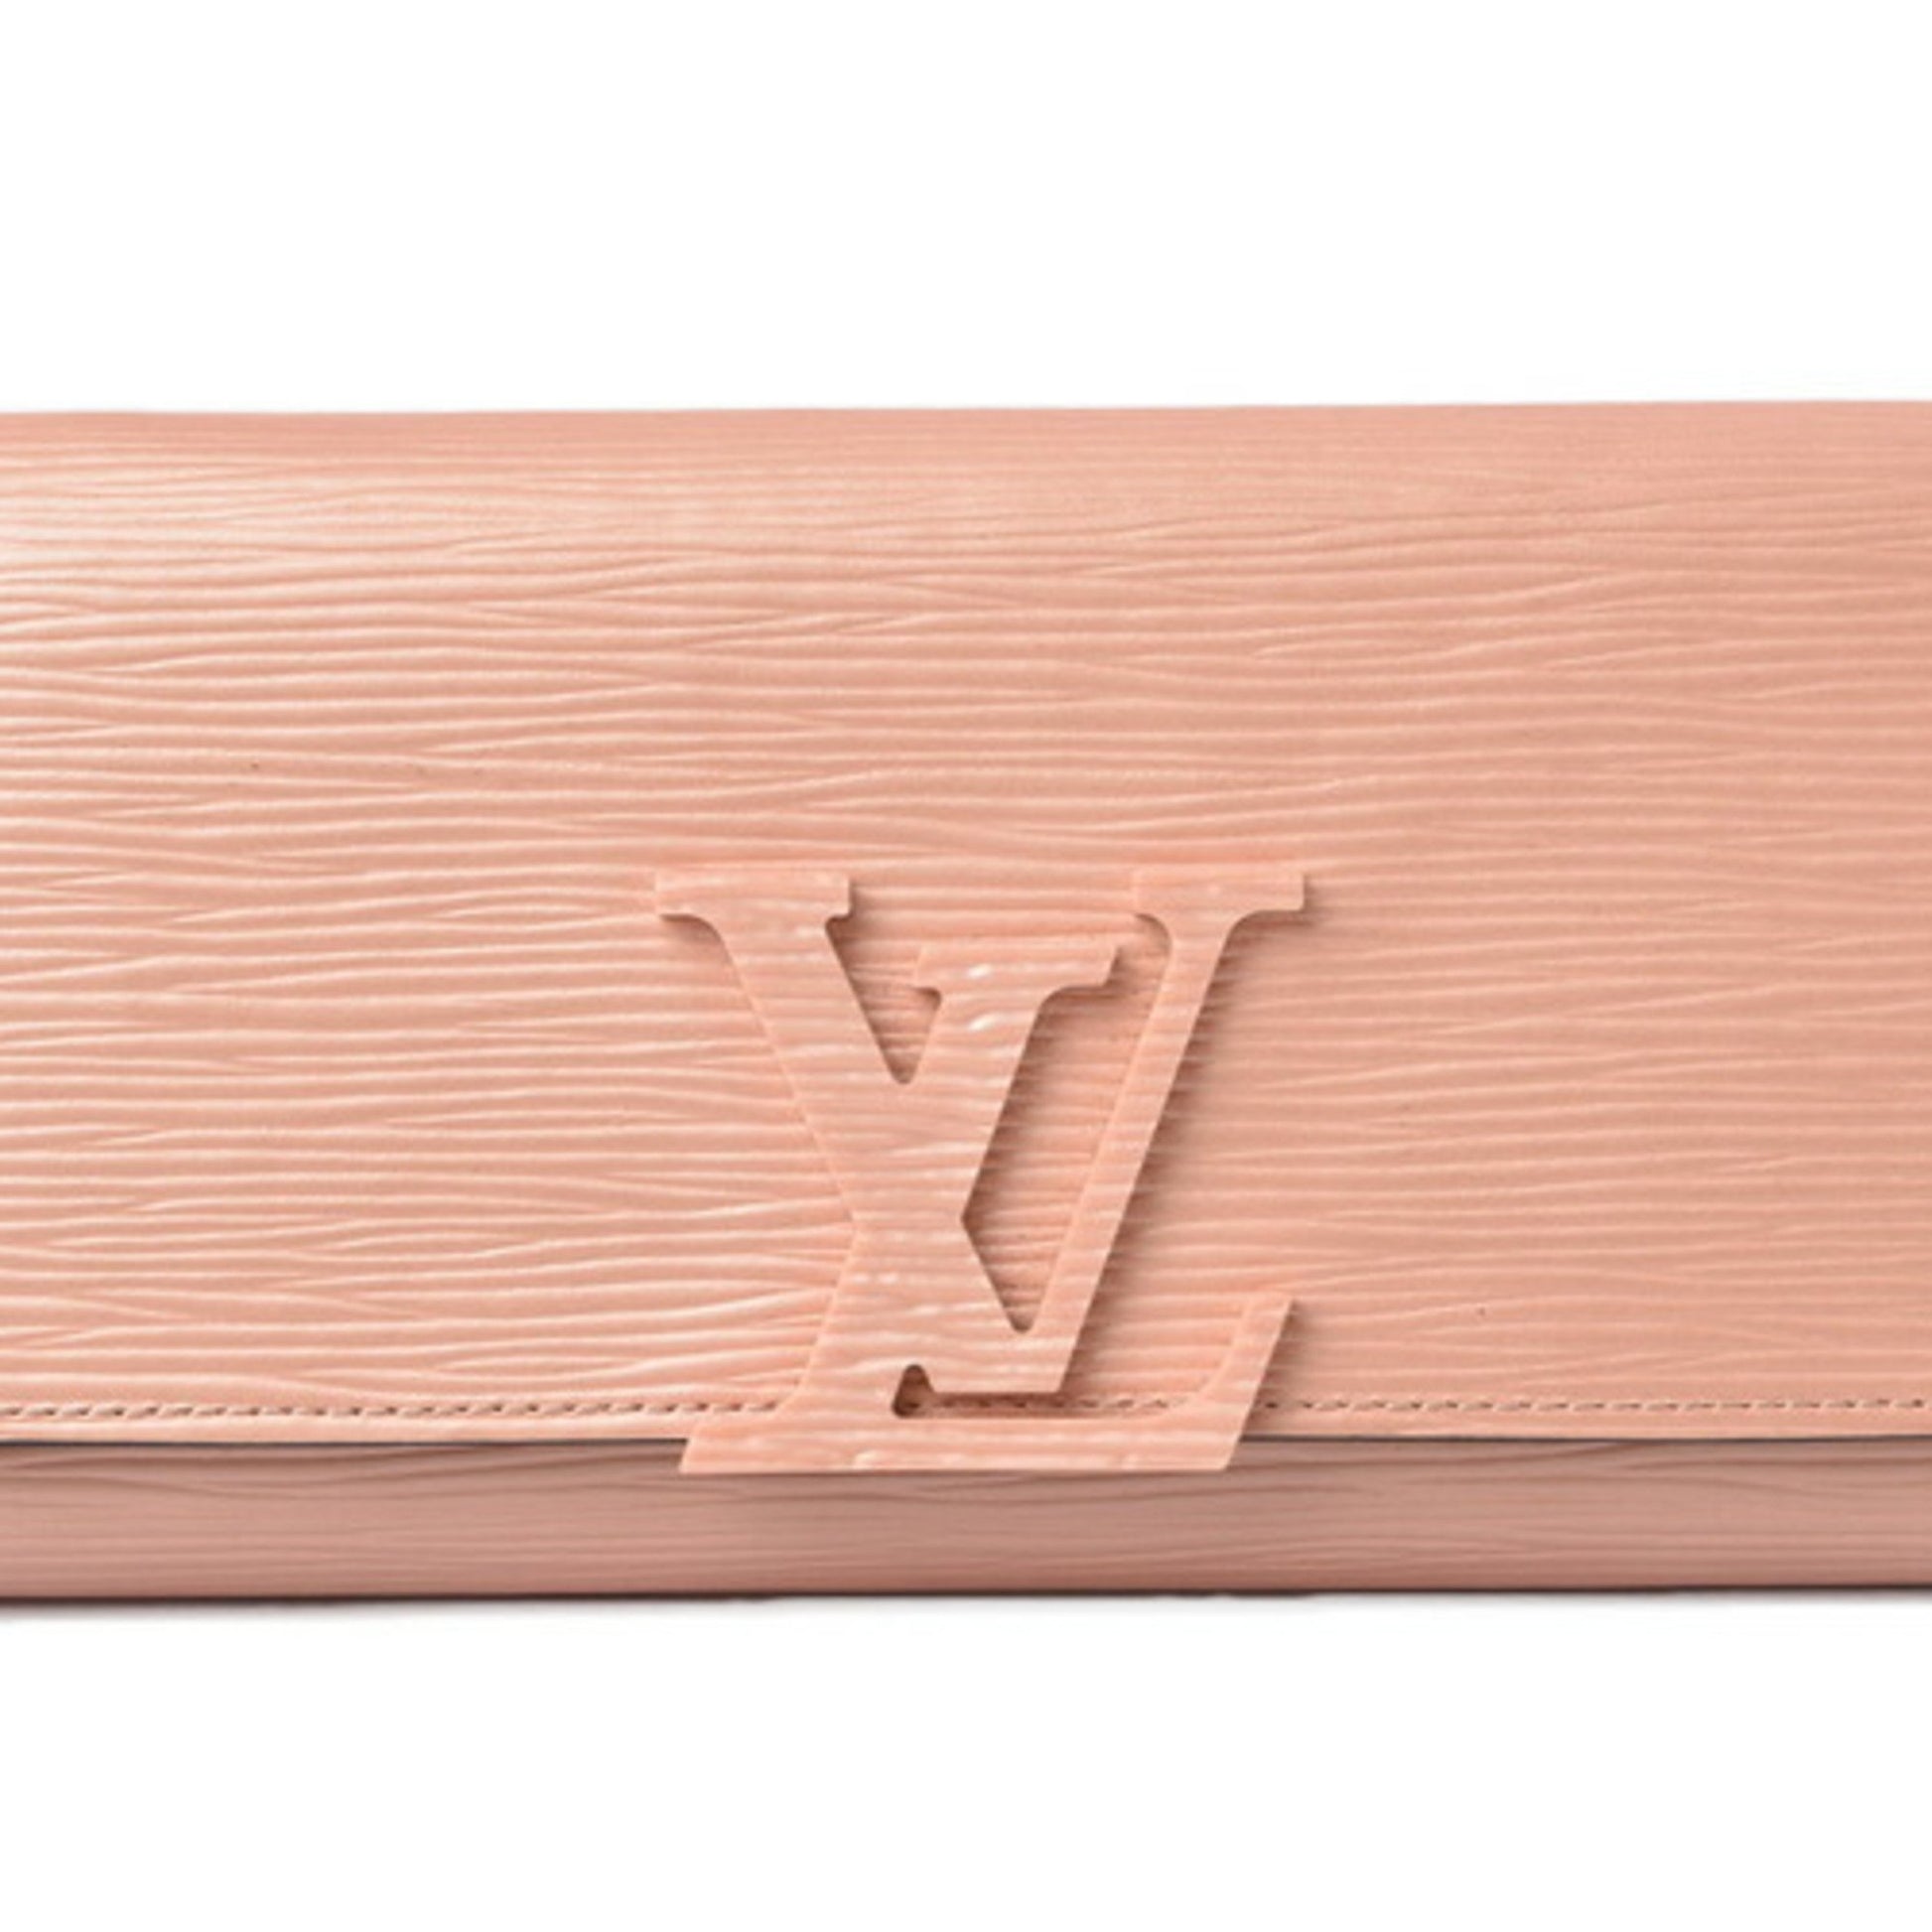 Louis Vuitton LOUIS VUITTON Money Clip Pance Bie Champs Elysees